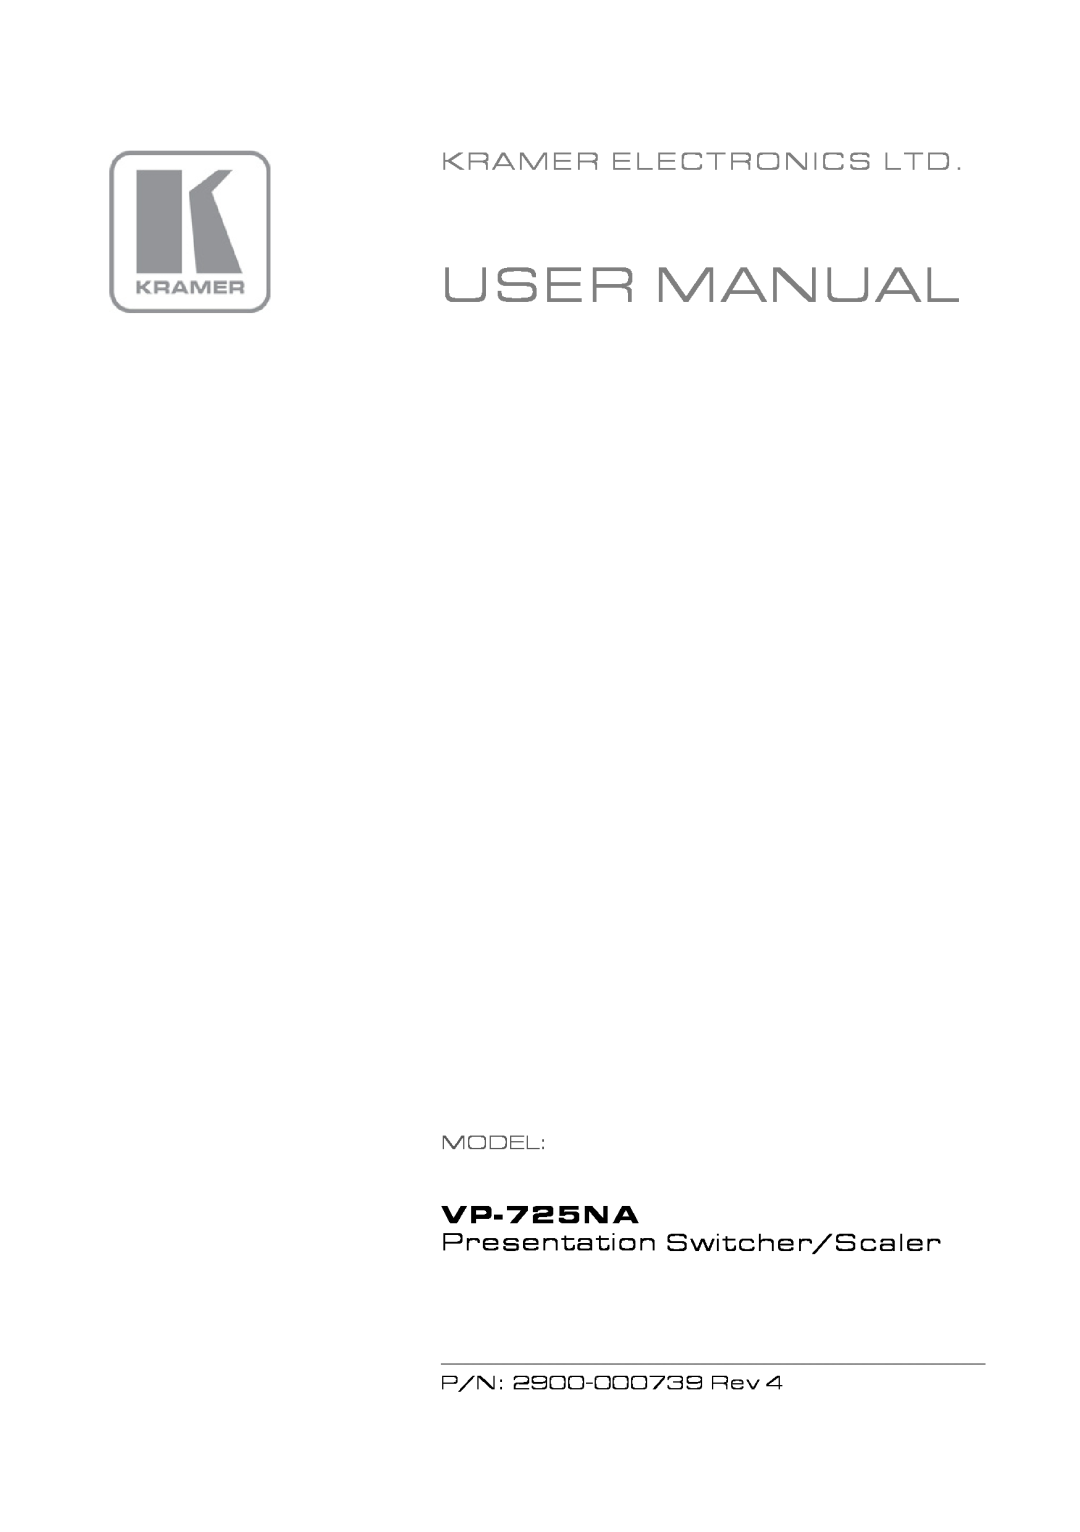 Kramer Electronics VP-725NA user manual User Manual, Presentation Switcher/Scaler, Model 